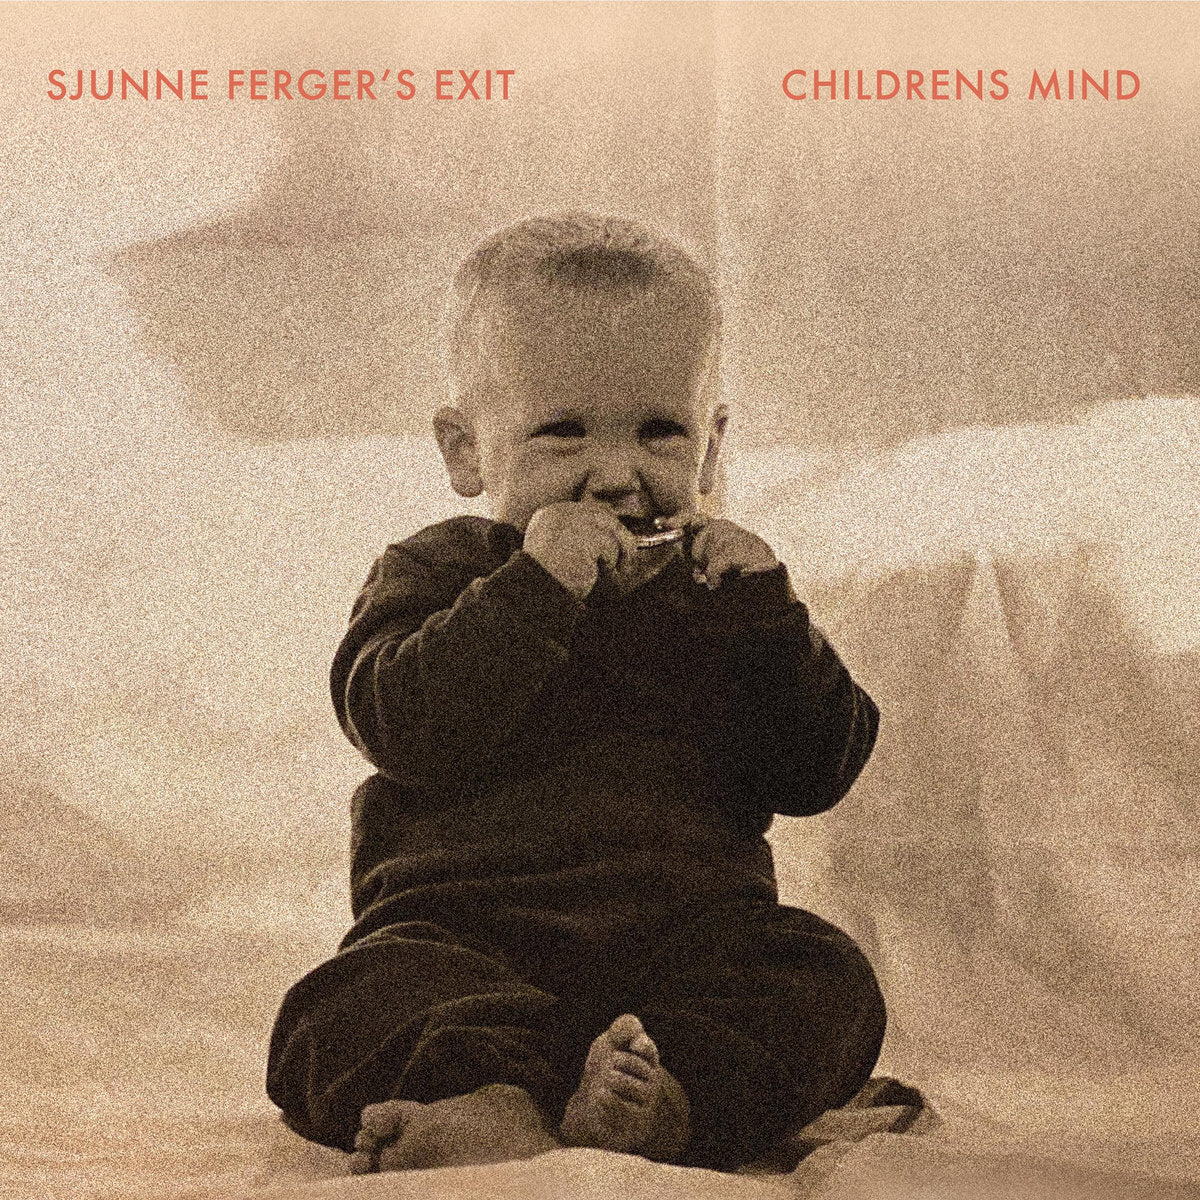 SJUNNE FERGER'S EXIT - "CHILDRENS MIND" LP